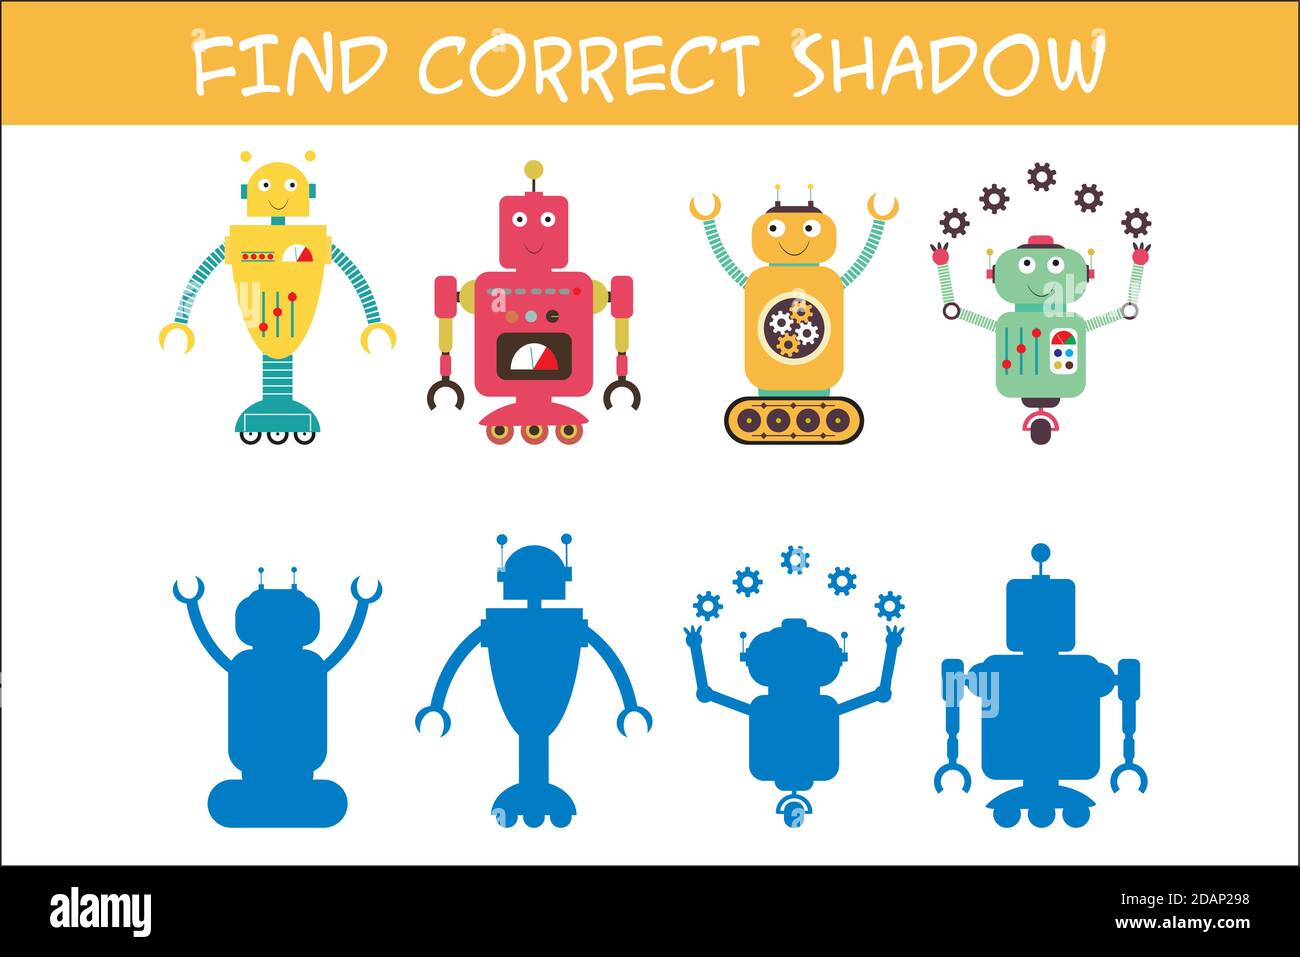 Kinder Spiel mit Robotern, finden richtige Schatten, Template-Seite Stock Vektor